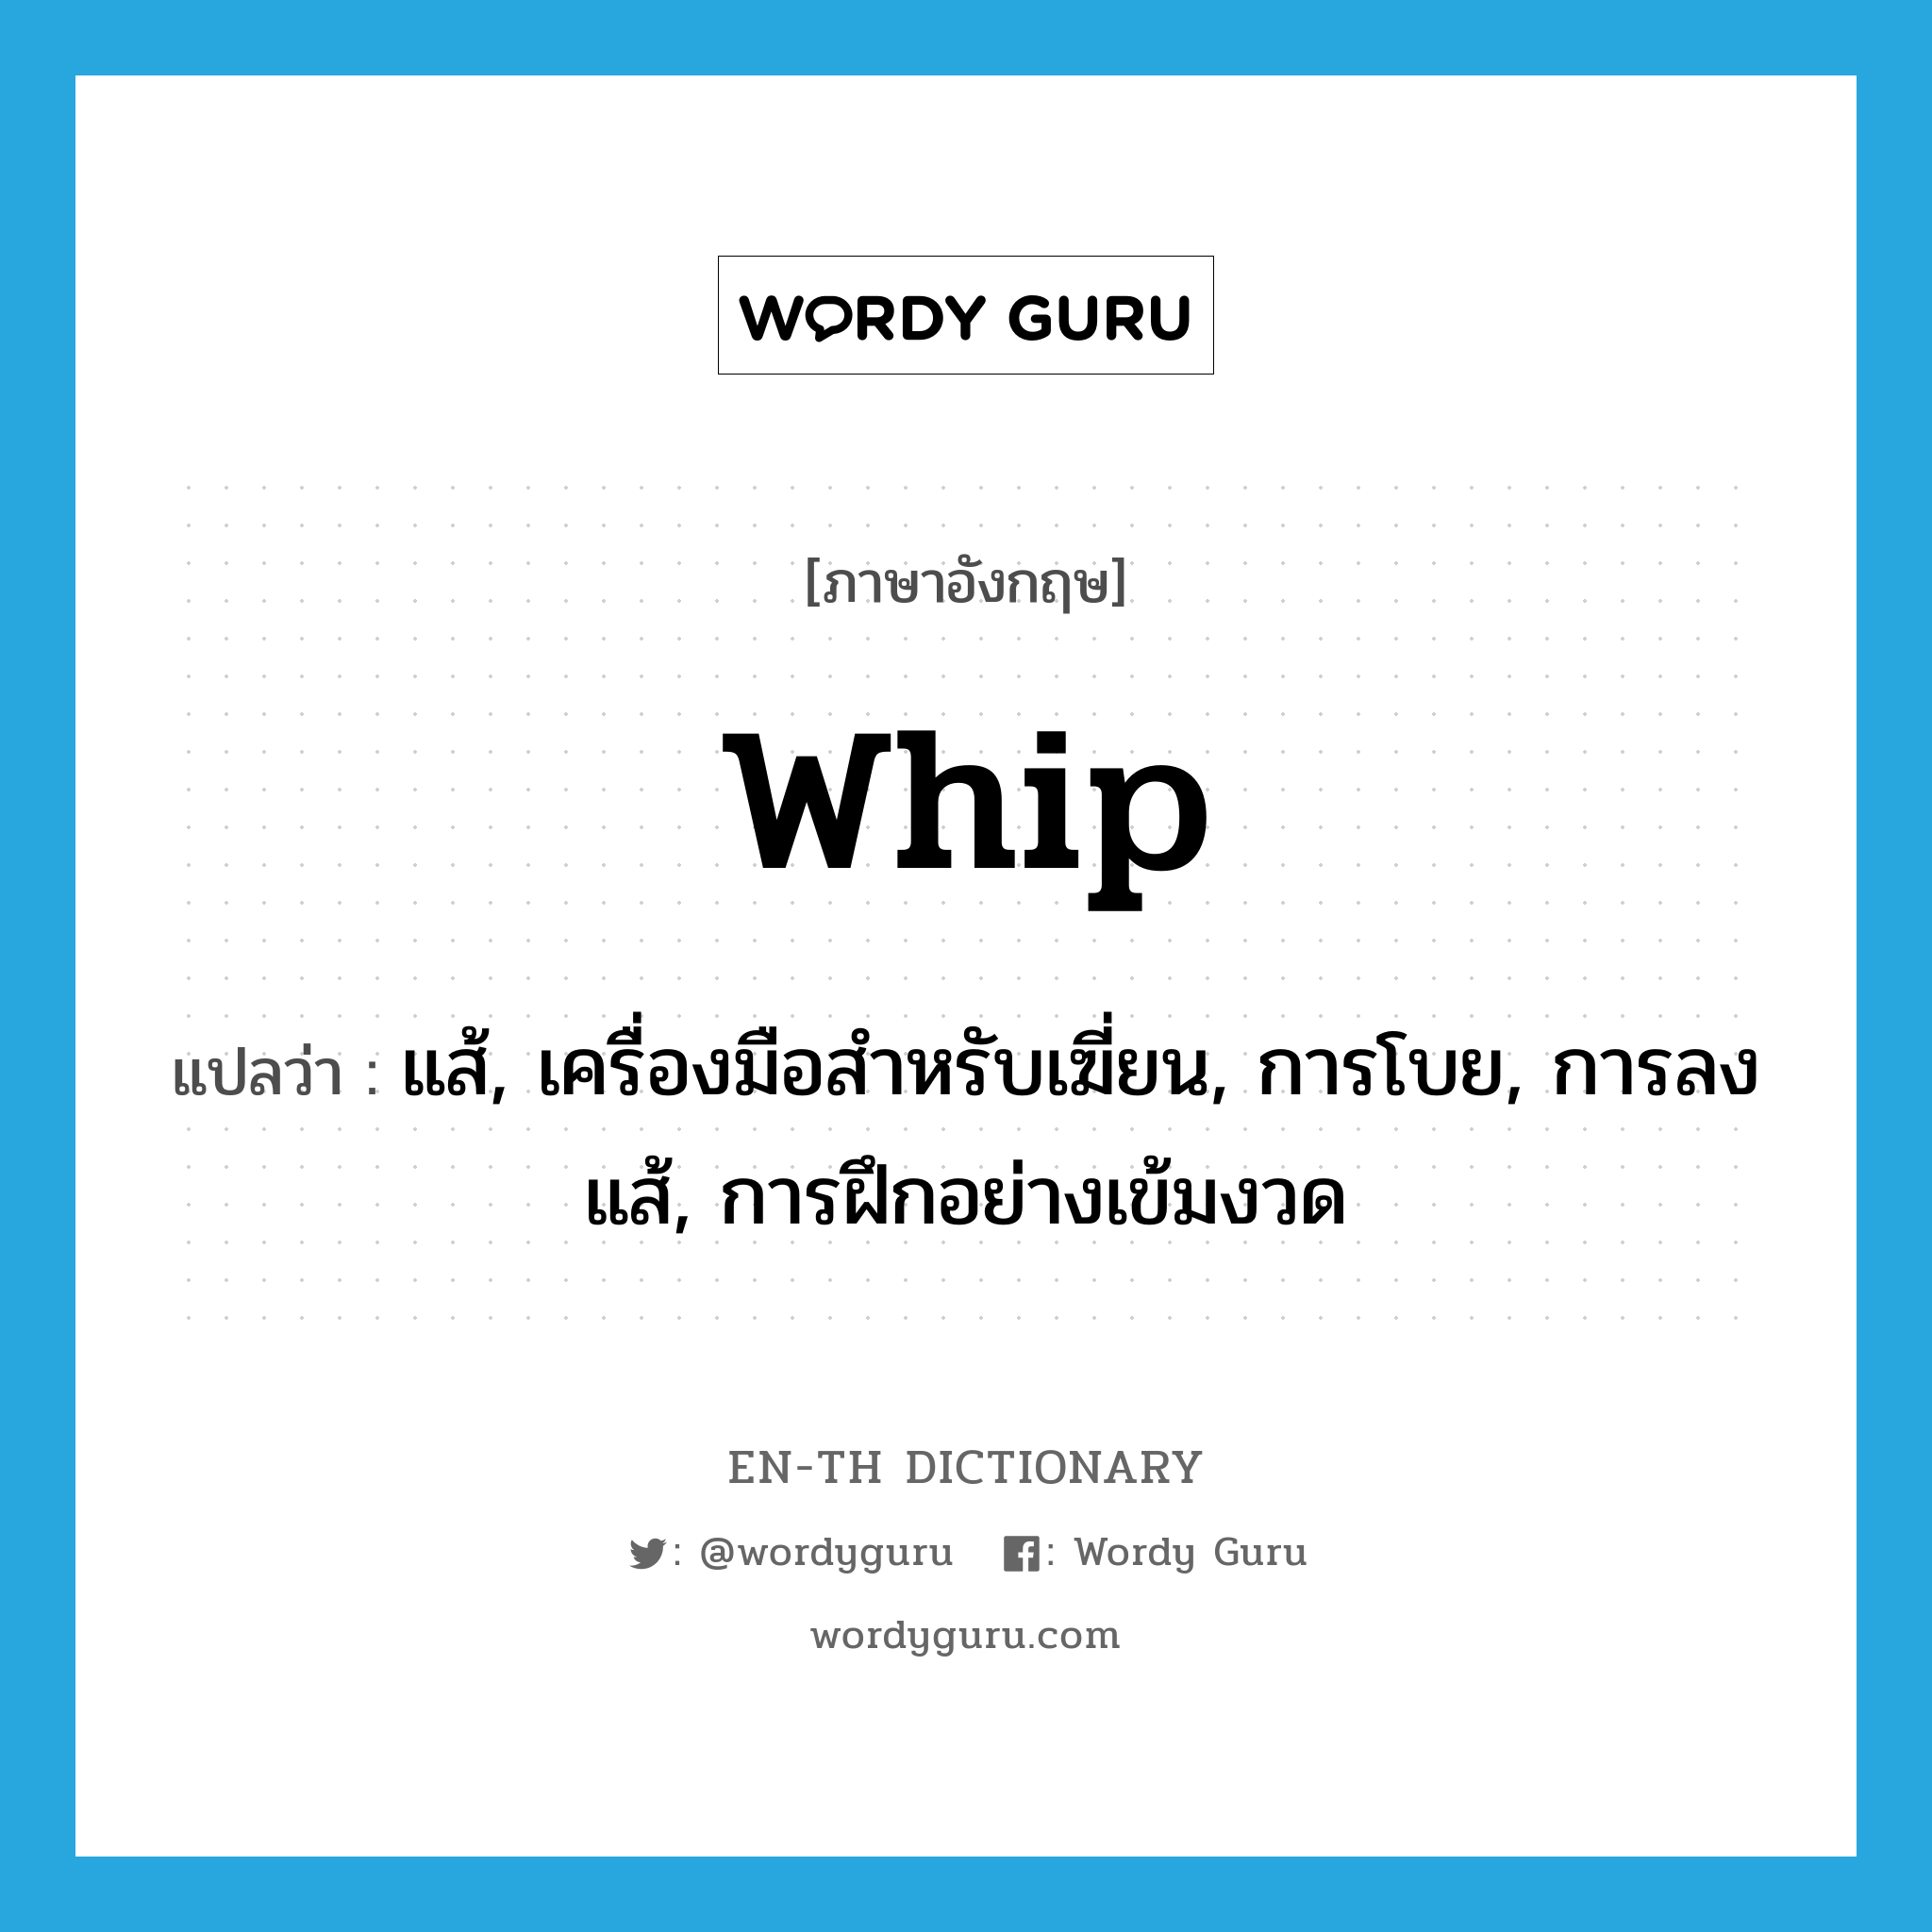 whip แปลว่า?, คำศัพท์ภาษาอังกฤษ whip แปลว่า แส้, เครื่องมือสำหรับเฆี่ยน, การโบย, การลงแส้, การฝึกอย่างเข้มงวด ประเภท N หมวด N